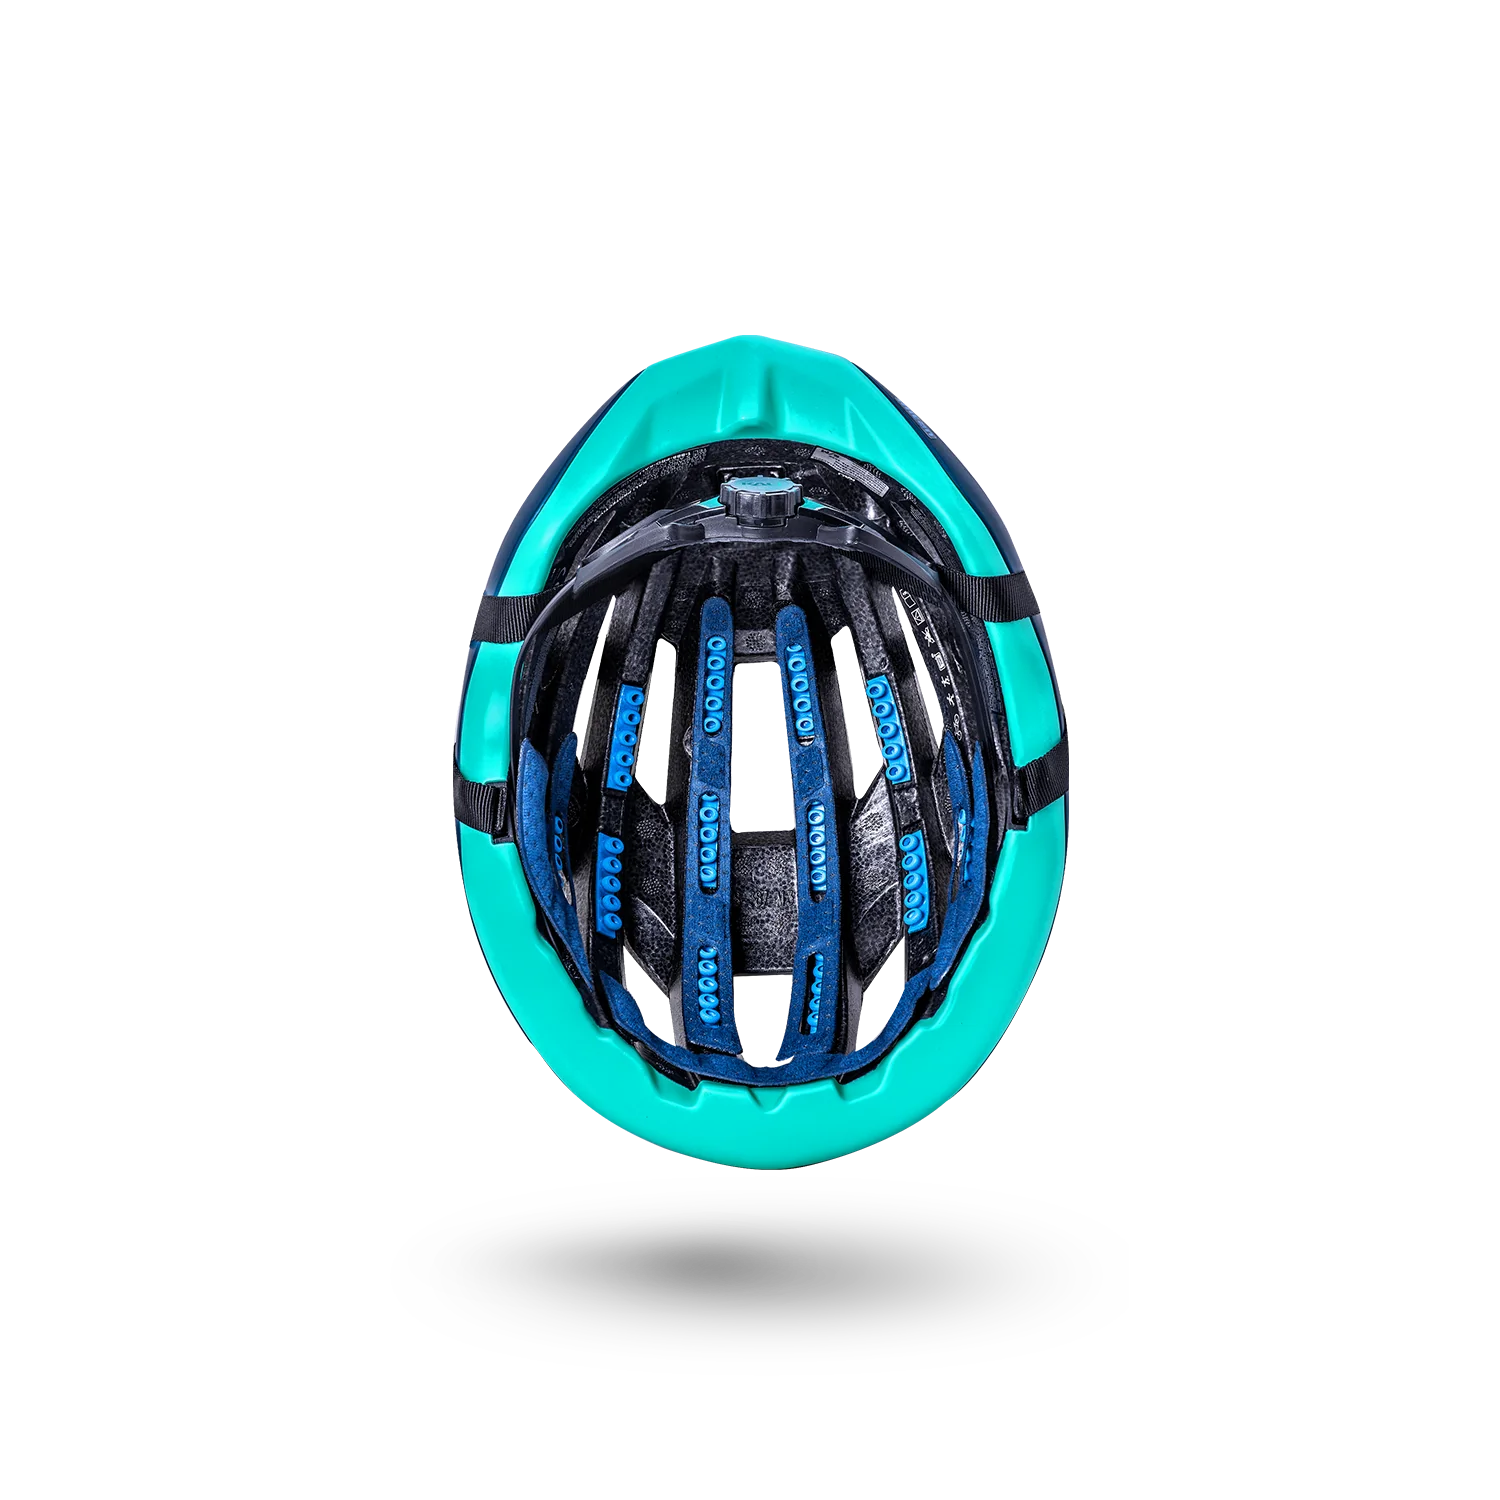 Kali Grit 1.0 Bicycle Helmet (3 Colors)